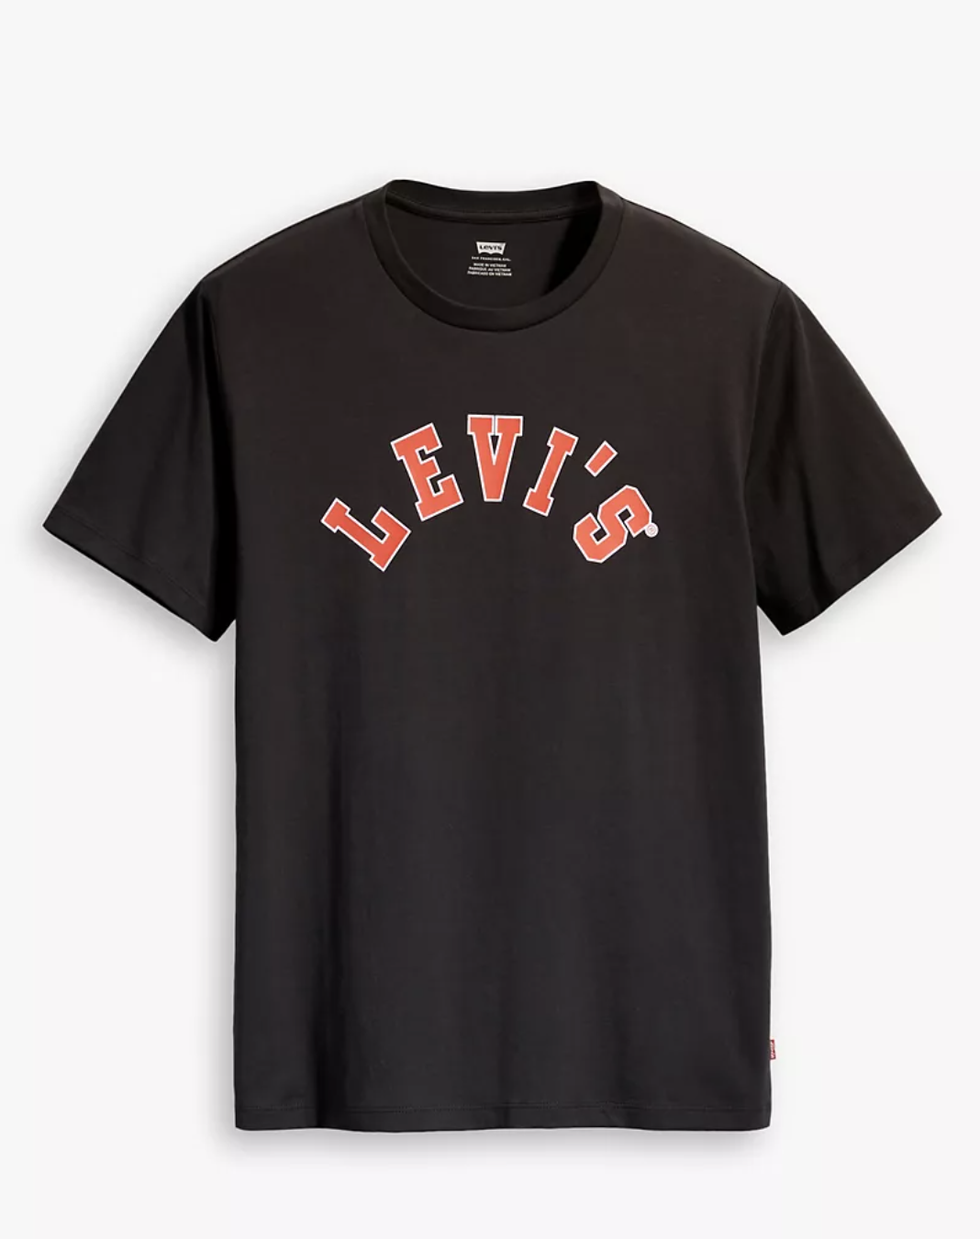 Levi's Warehouse Sale for Men 2021